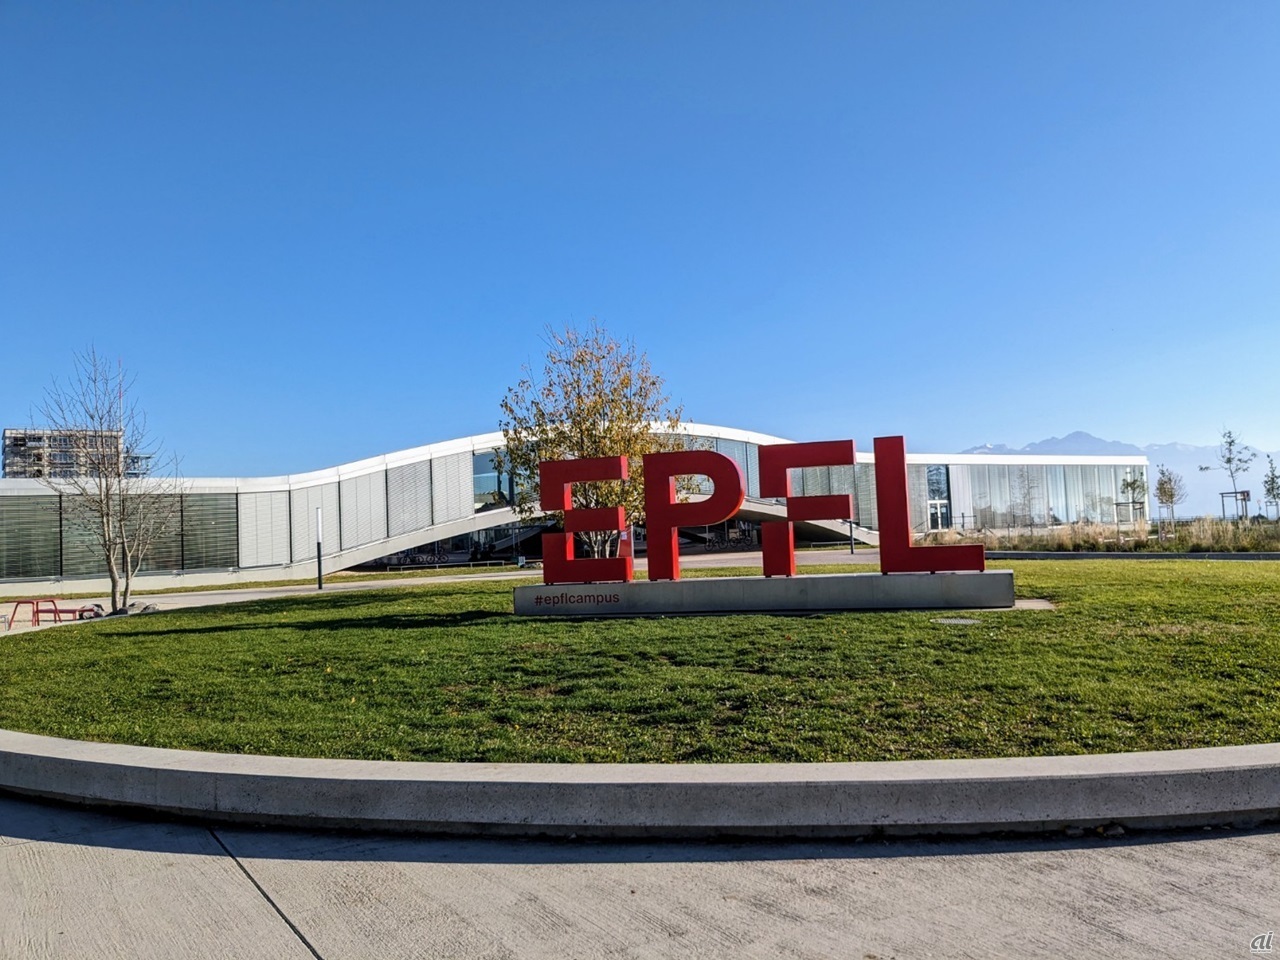 EPFLのロゴの奥に見えるのは学習施設「Rolex Learning Center」。ジュネーブに本社を置くRolexがスポンサーを務め、日本の建築家ユニット「SANAA」が設計を担当した。夕方に館内へ入ると、学生たちが熱心に自習やミーティングに打ち込んでいた。「天然エネルギー資源に乏しいスイスでは、頭脳に投資している」と同校の教授は話す。